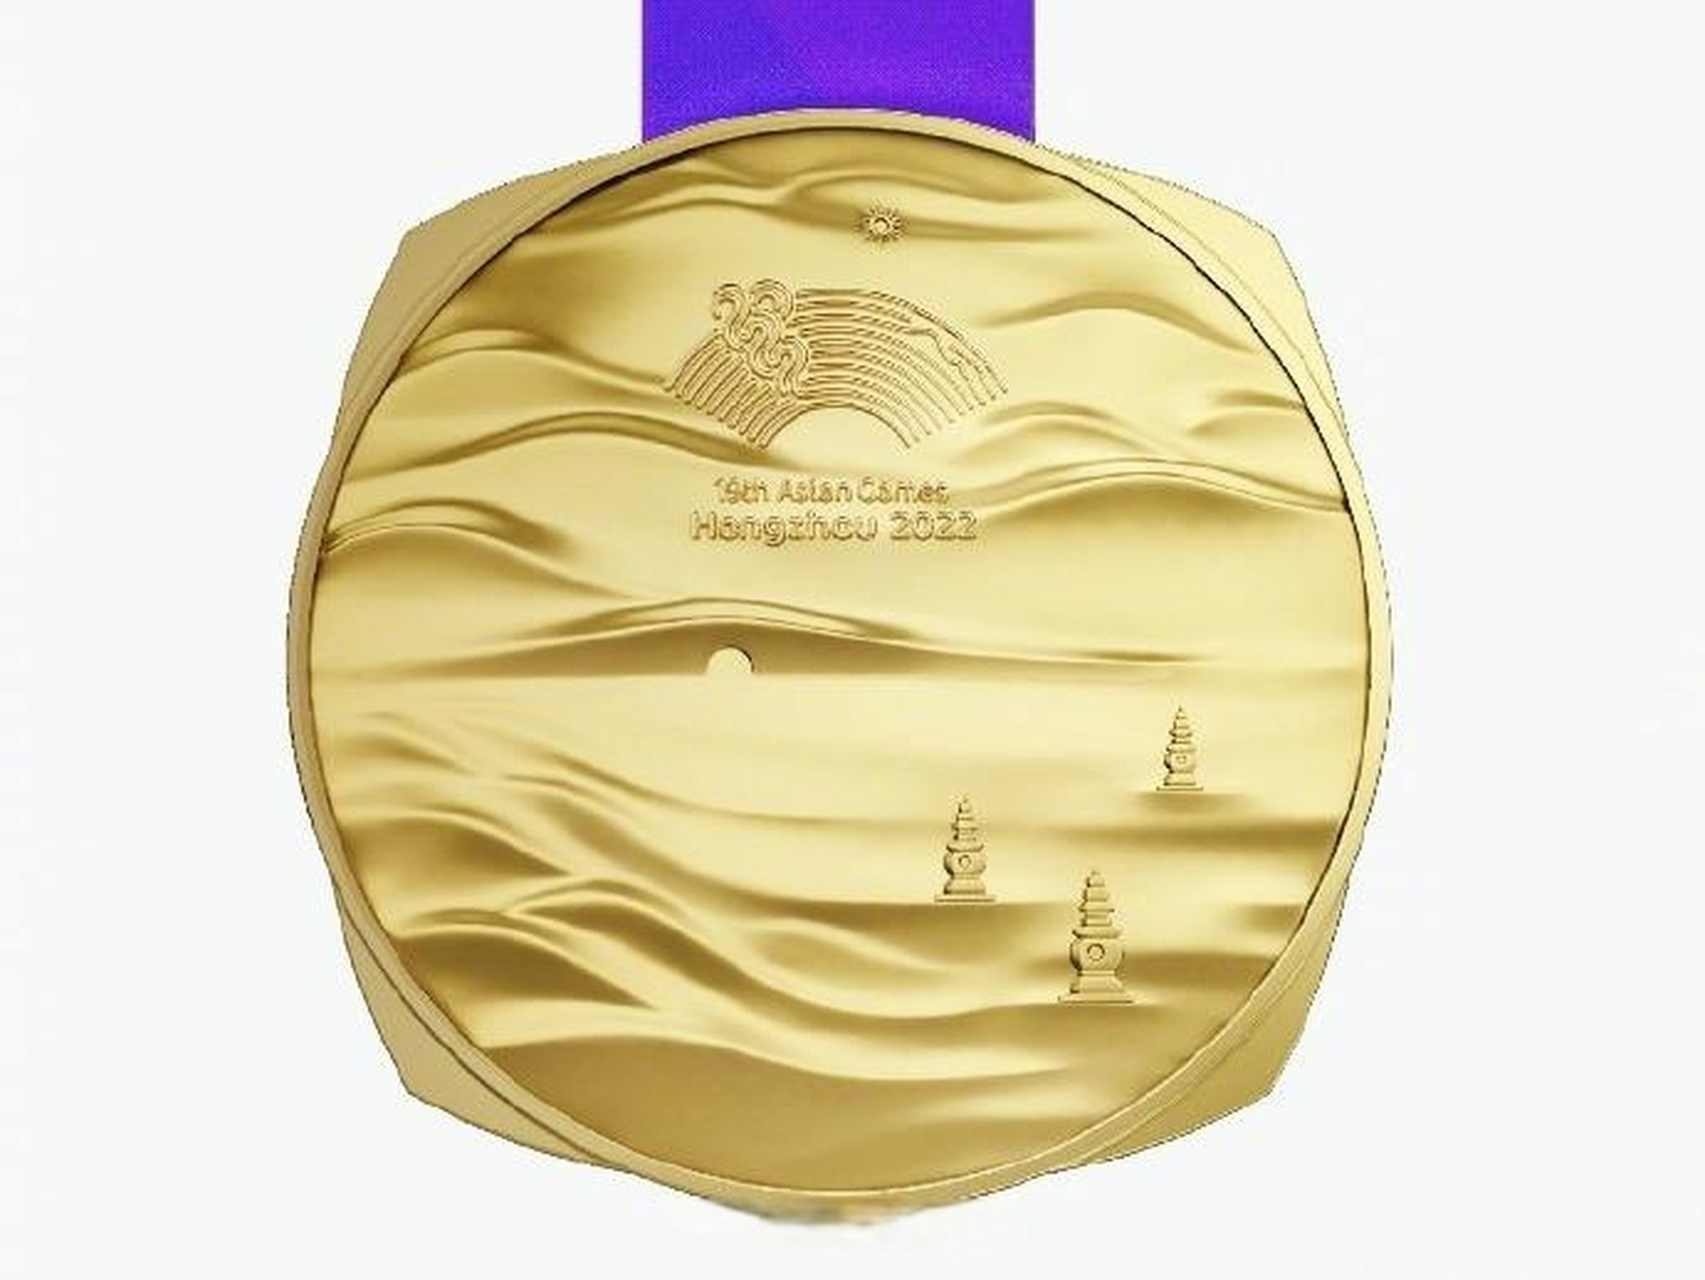 亚运会奖牌设计图片